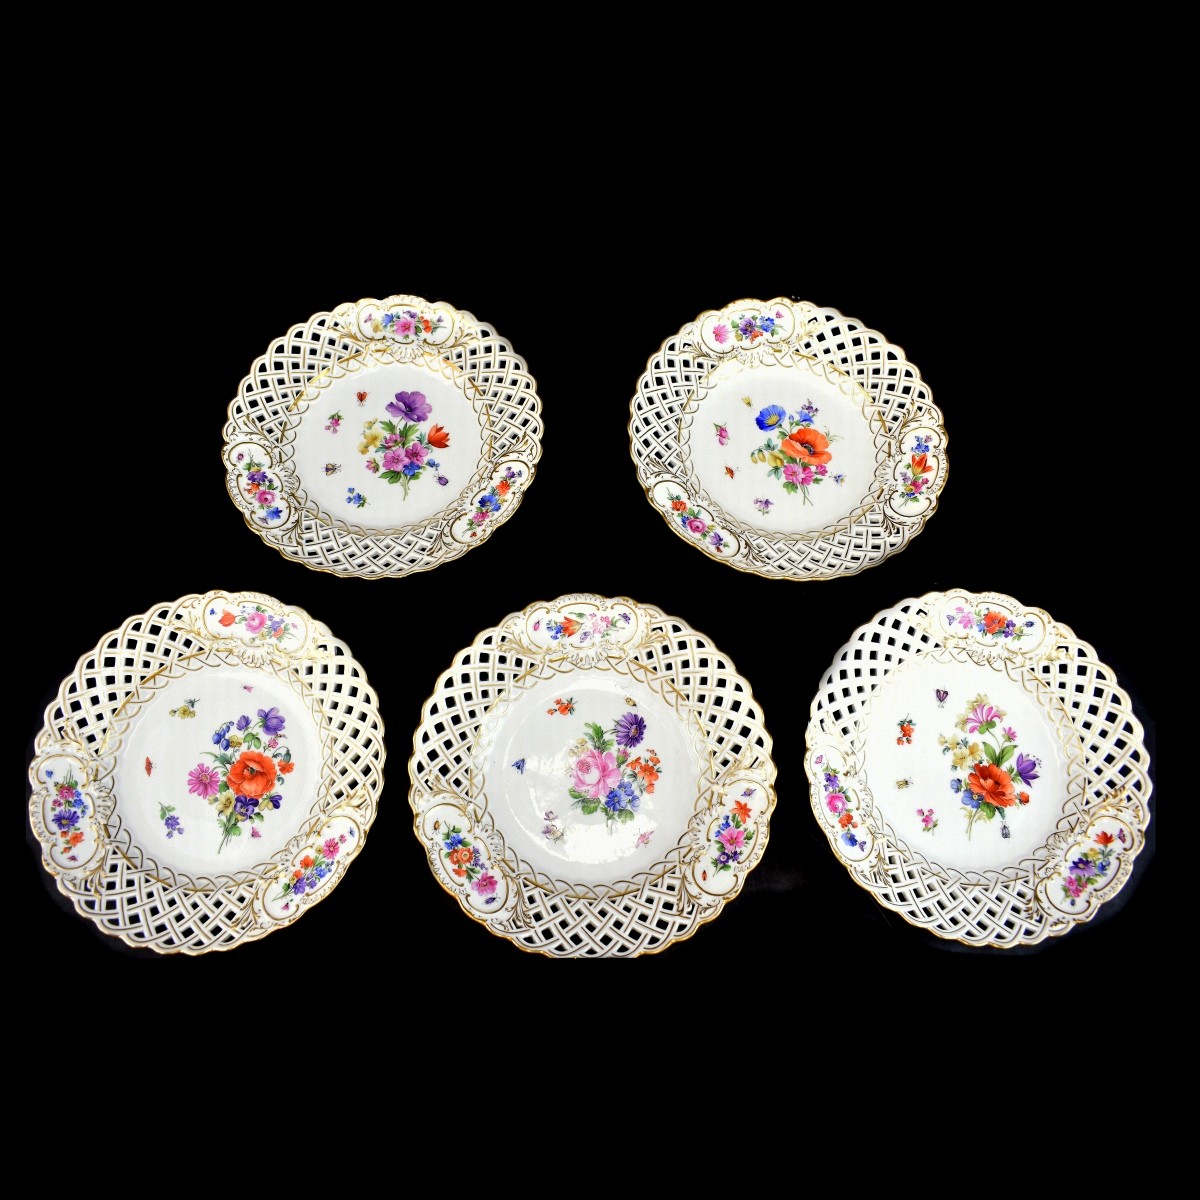 Five (5) Antique Meissen Porcelain Plates